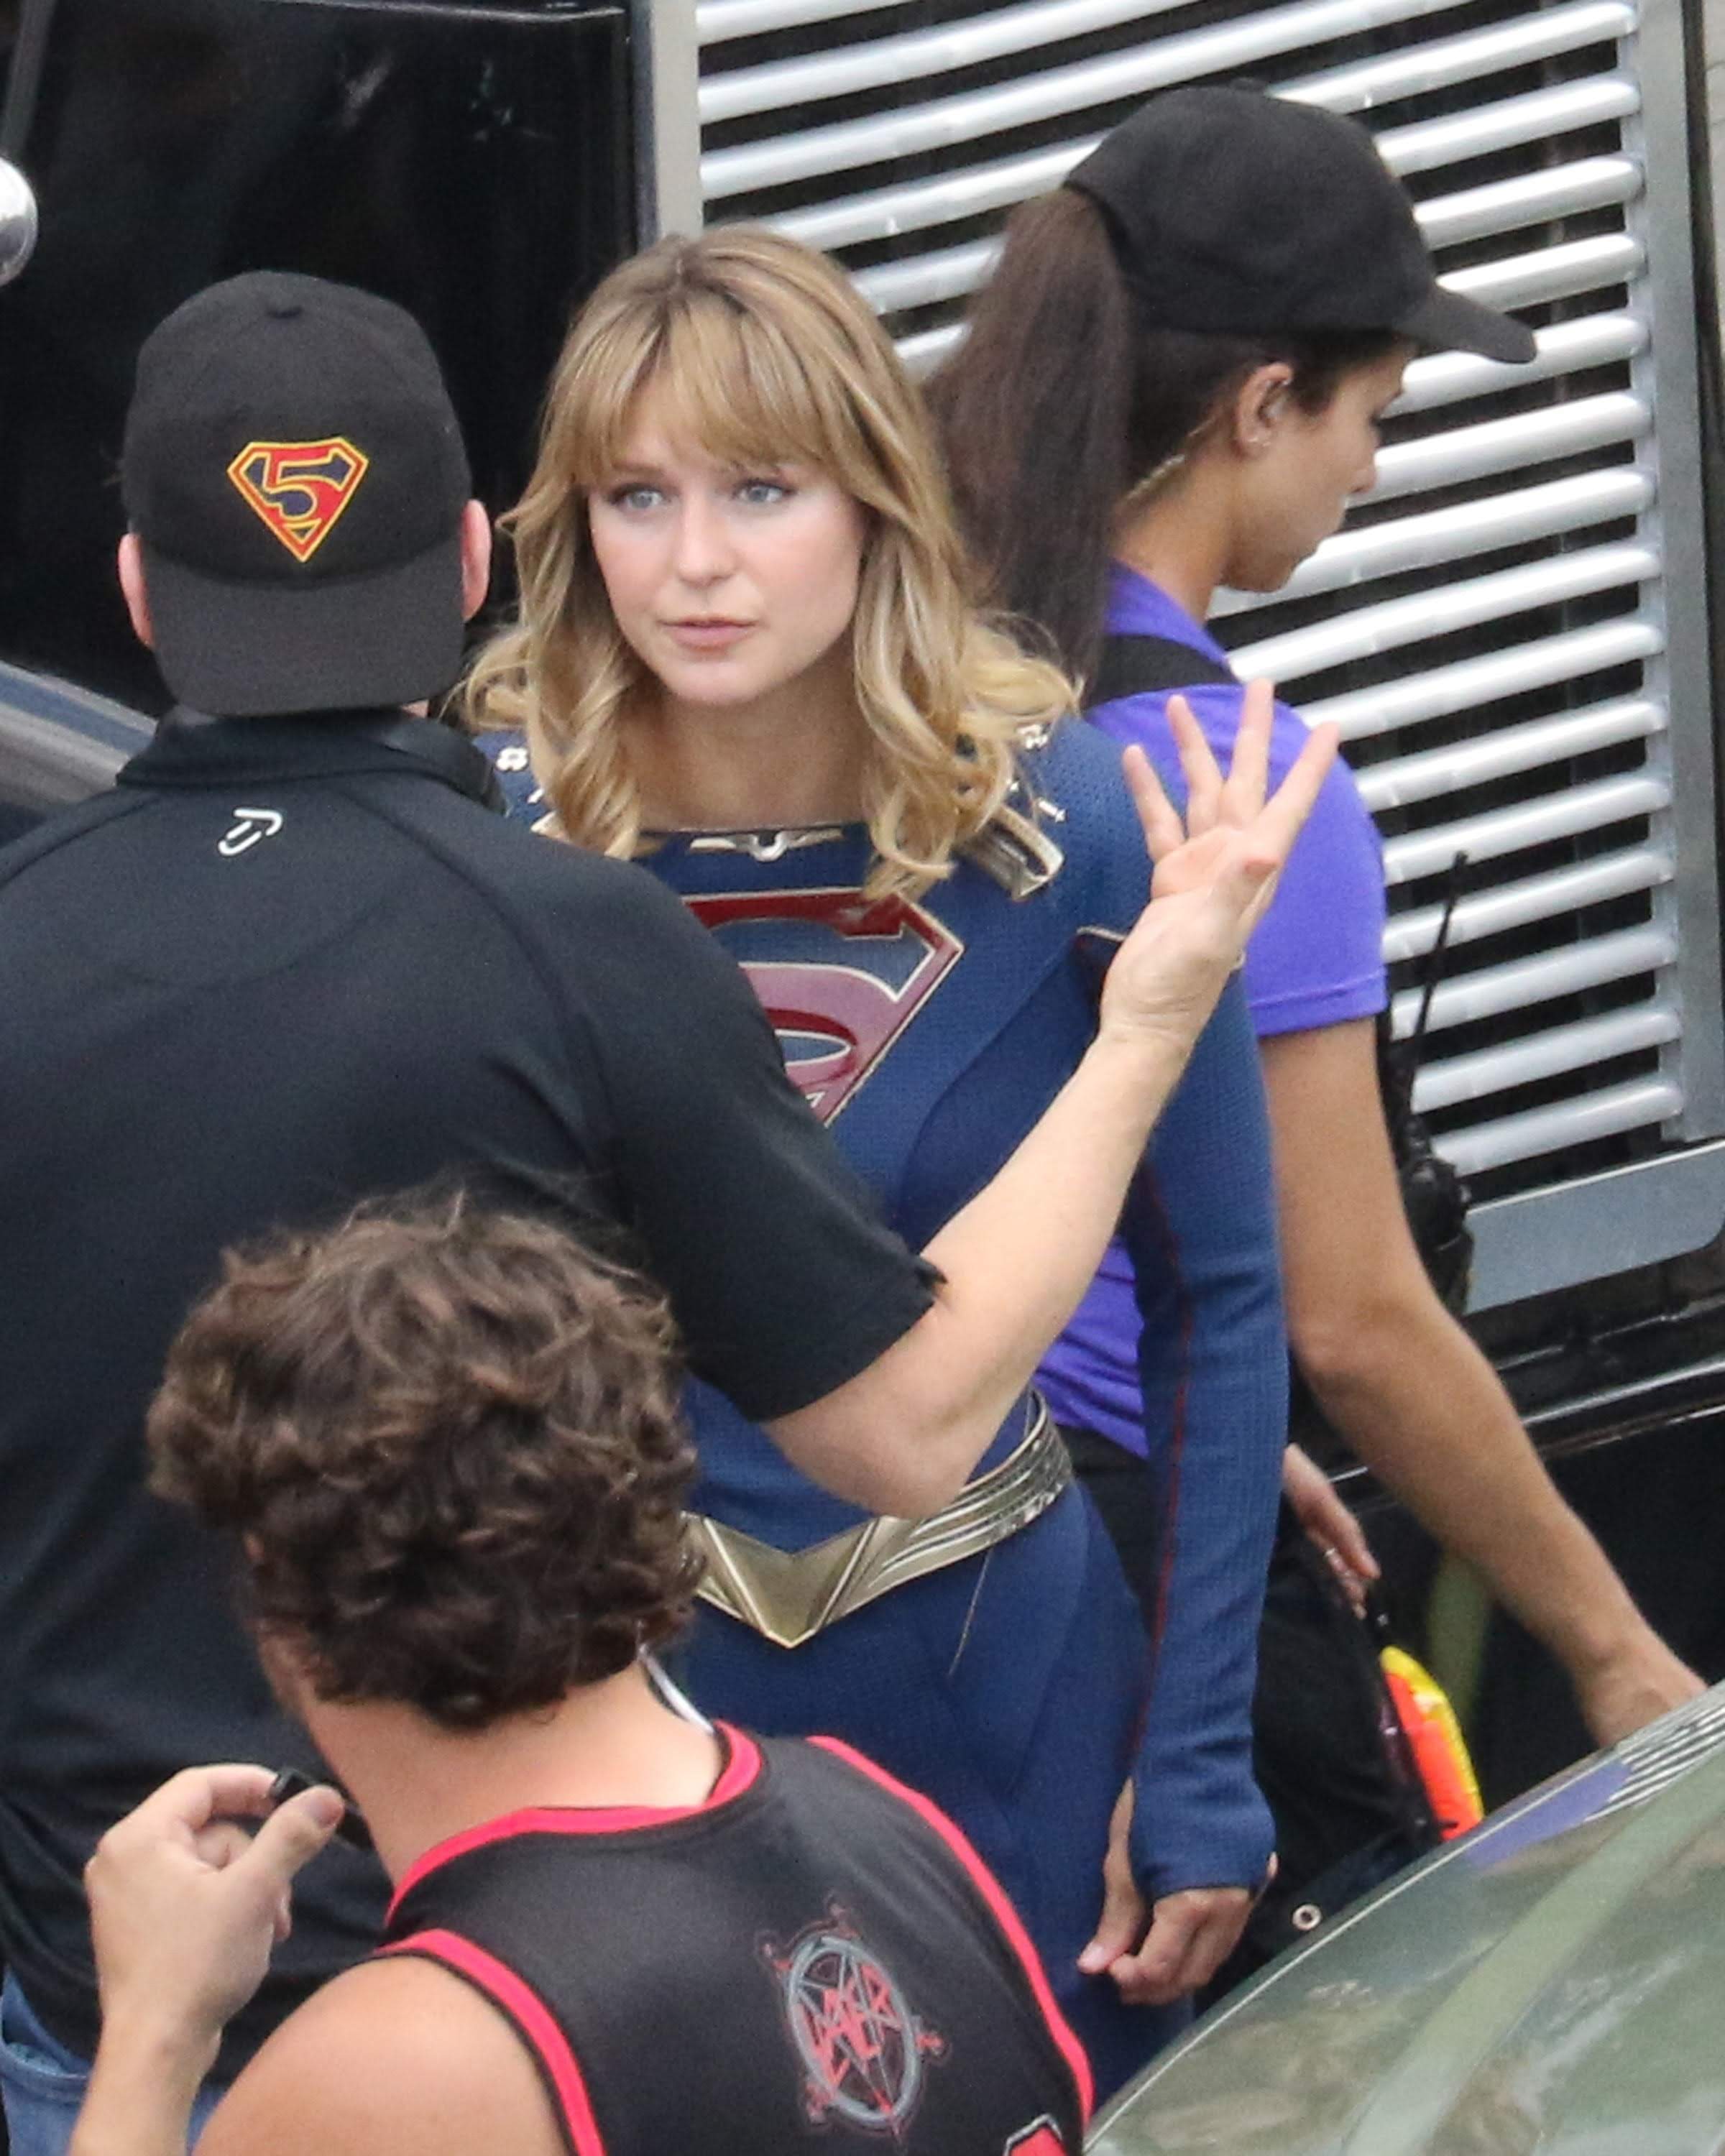 Melissa Benoist On The Set Of Supergirl In Her New Costume 空飛ぶヒロインの新コスチュームを身に着けたメリッサ ベノイストが初めて 公けの場に登場した スーパーガール シーズン 5 撮影中のセット フォト B Side Of Cia